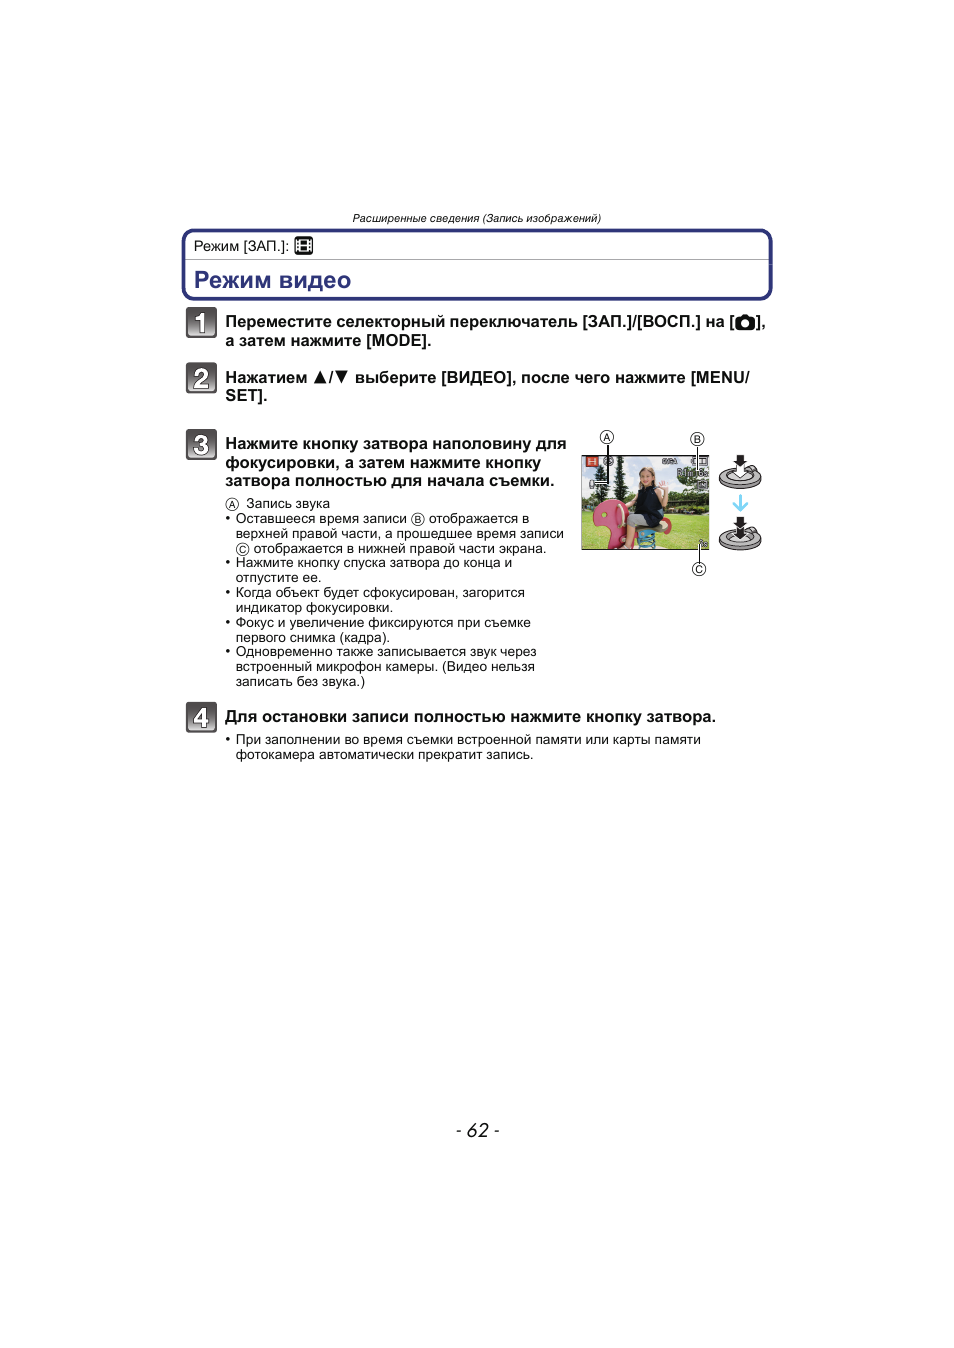 Режим видео, P62), Емки | Инструкция по эксплуатации Panasonic KX-MC6020 | Страница 62 / 130